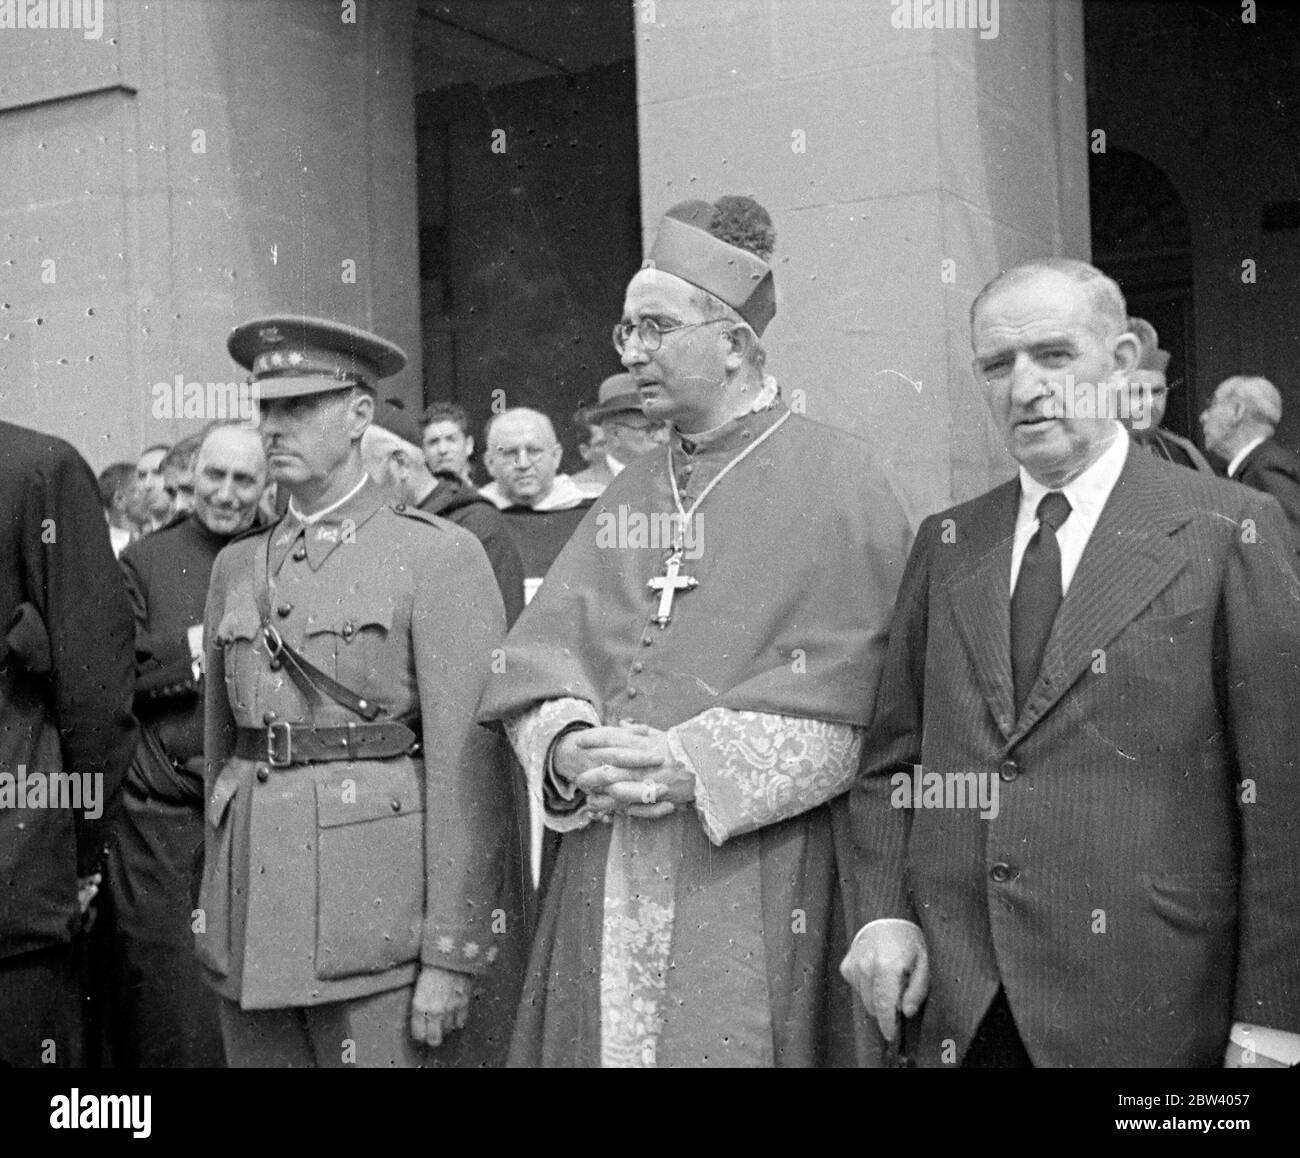 L'arrivée des troupes nationalistes à San Sebastián / Donostia. Photos: Officier, chefs militaires et politiques, clergé ? Septembre 1936 Banque D'Images